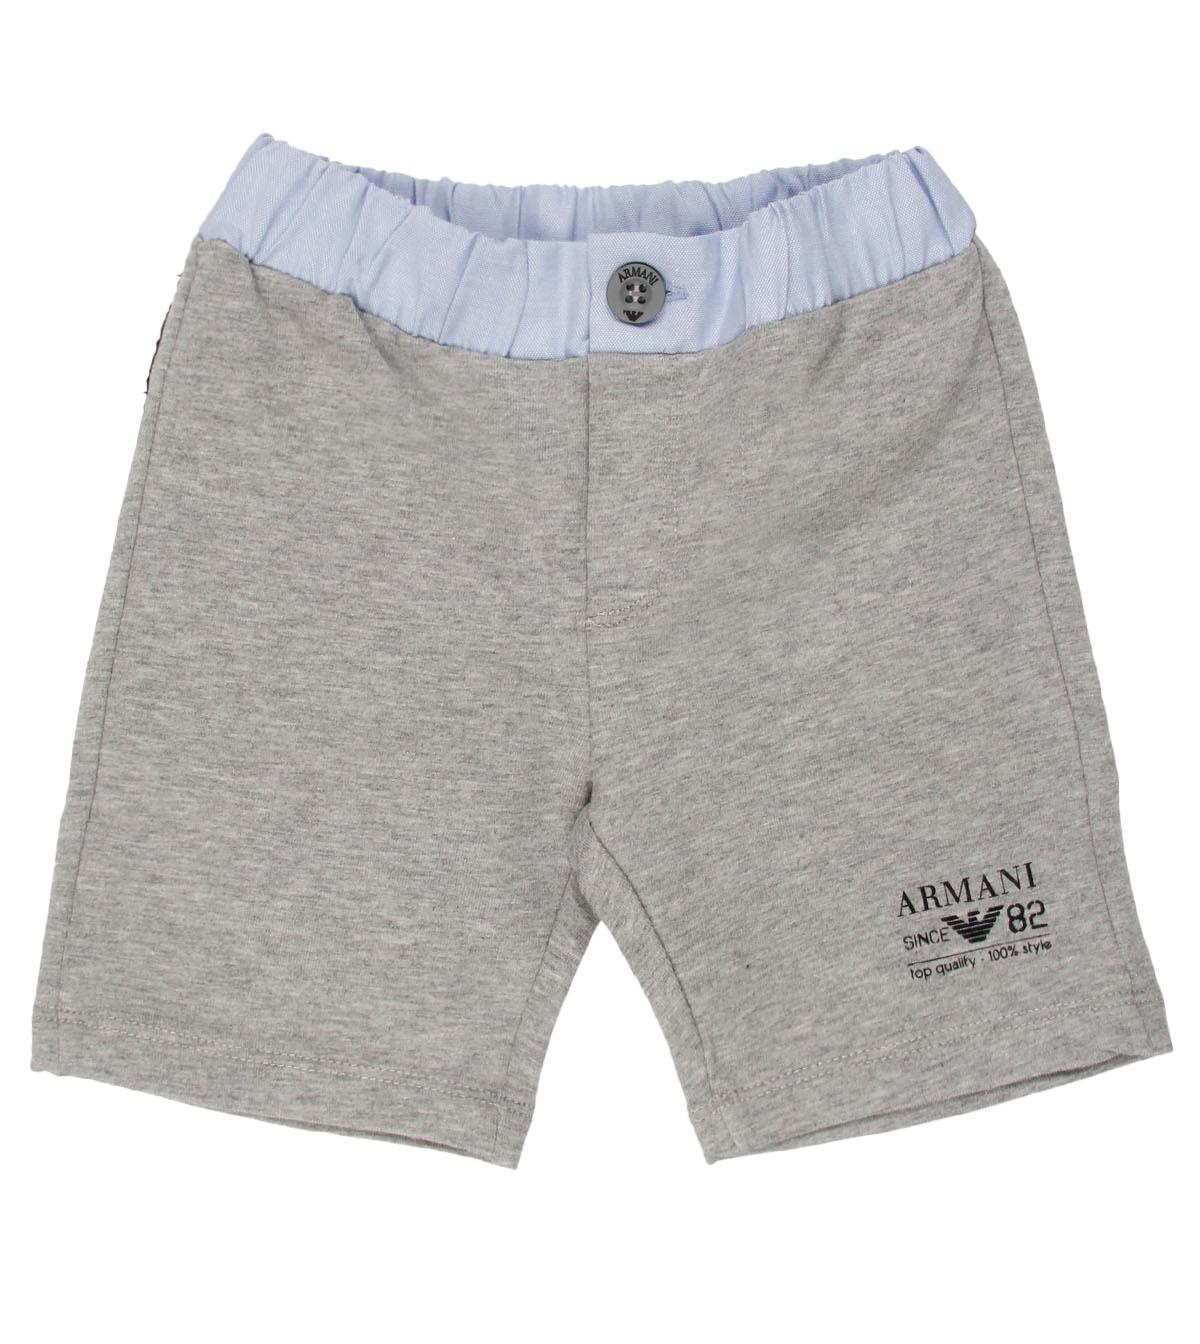 Foto Armani Junior Grey Bermuda Pants-18 Months